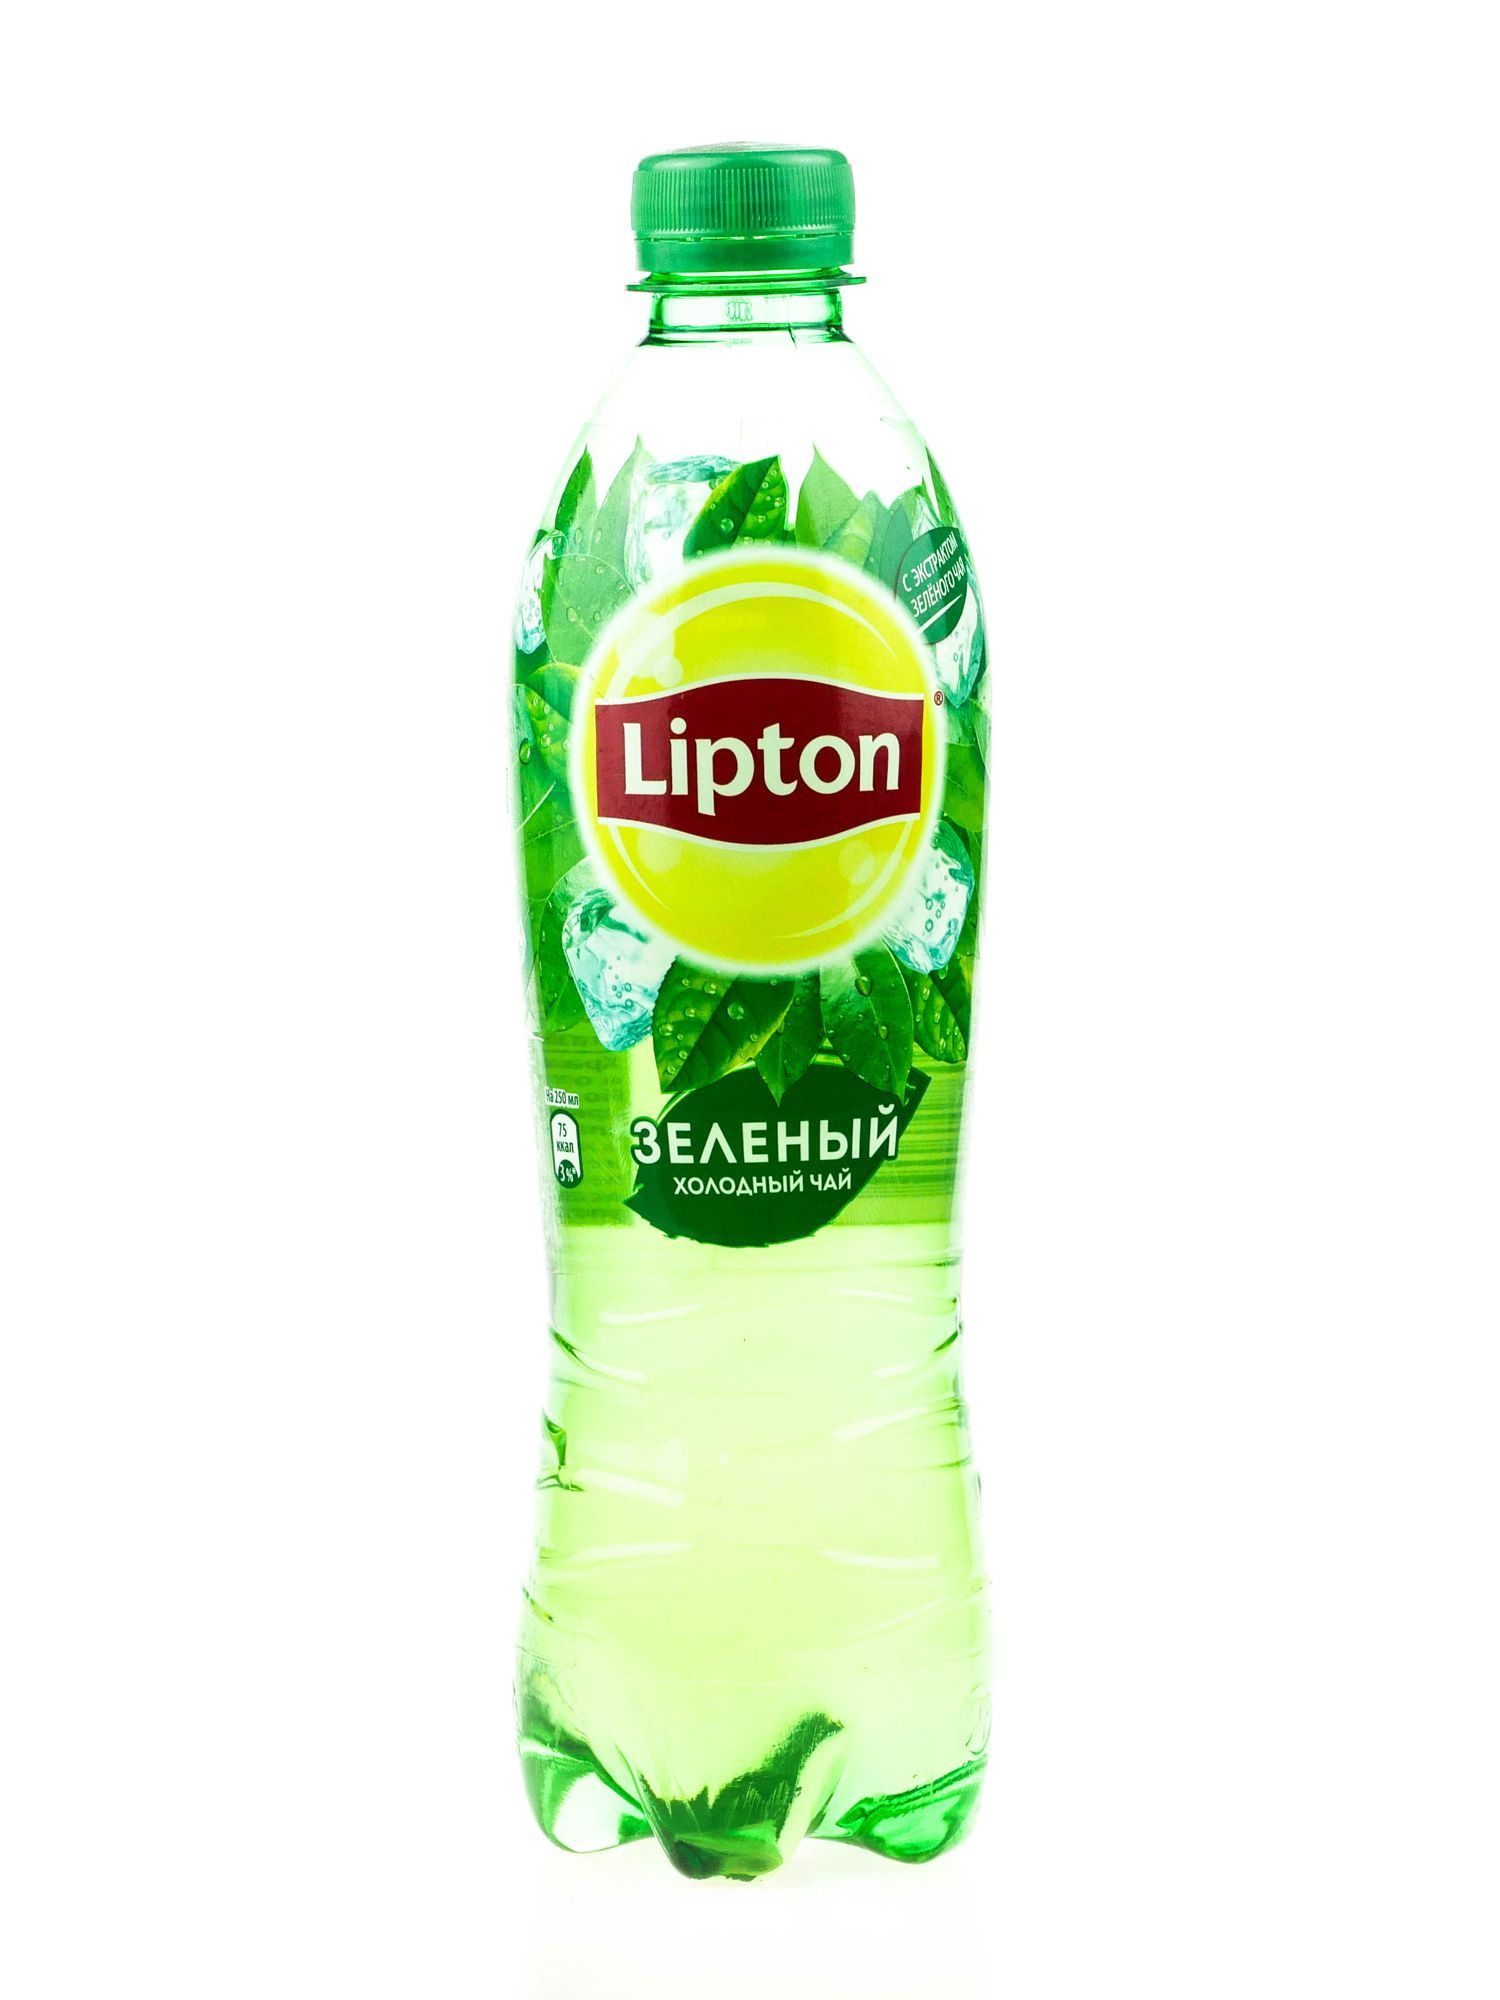 Зеленый чай липтон в бутылке. Липтон зелёный холодный чай. Липтон холодный чай зеленый 0.5. Липтон зеленый чай 0.5. Чай Липтон 0.5.